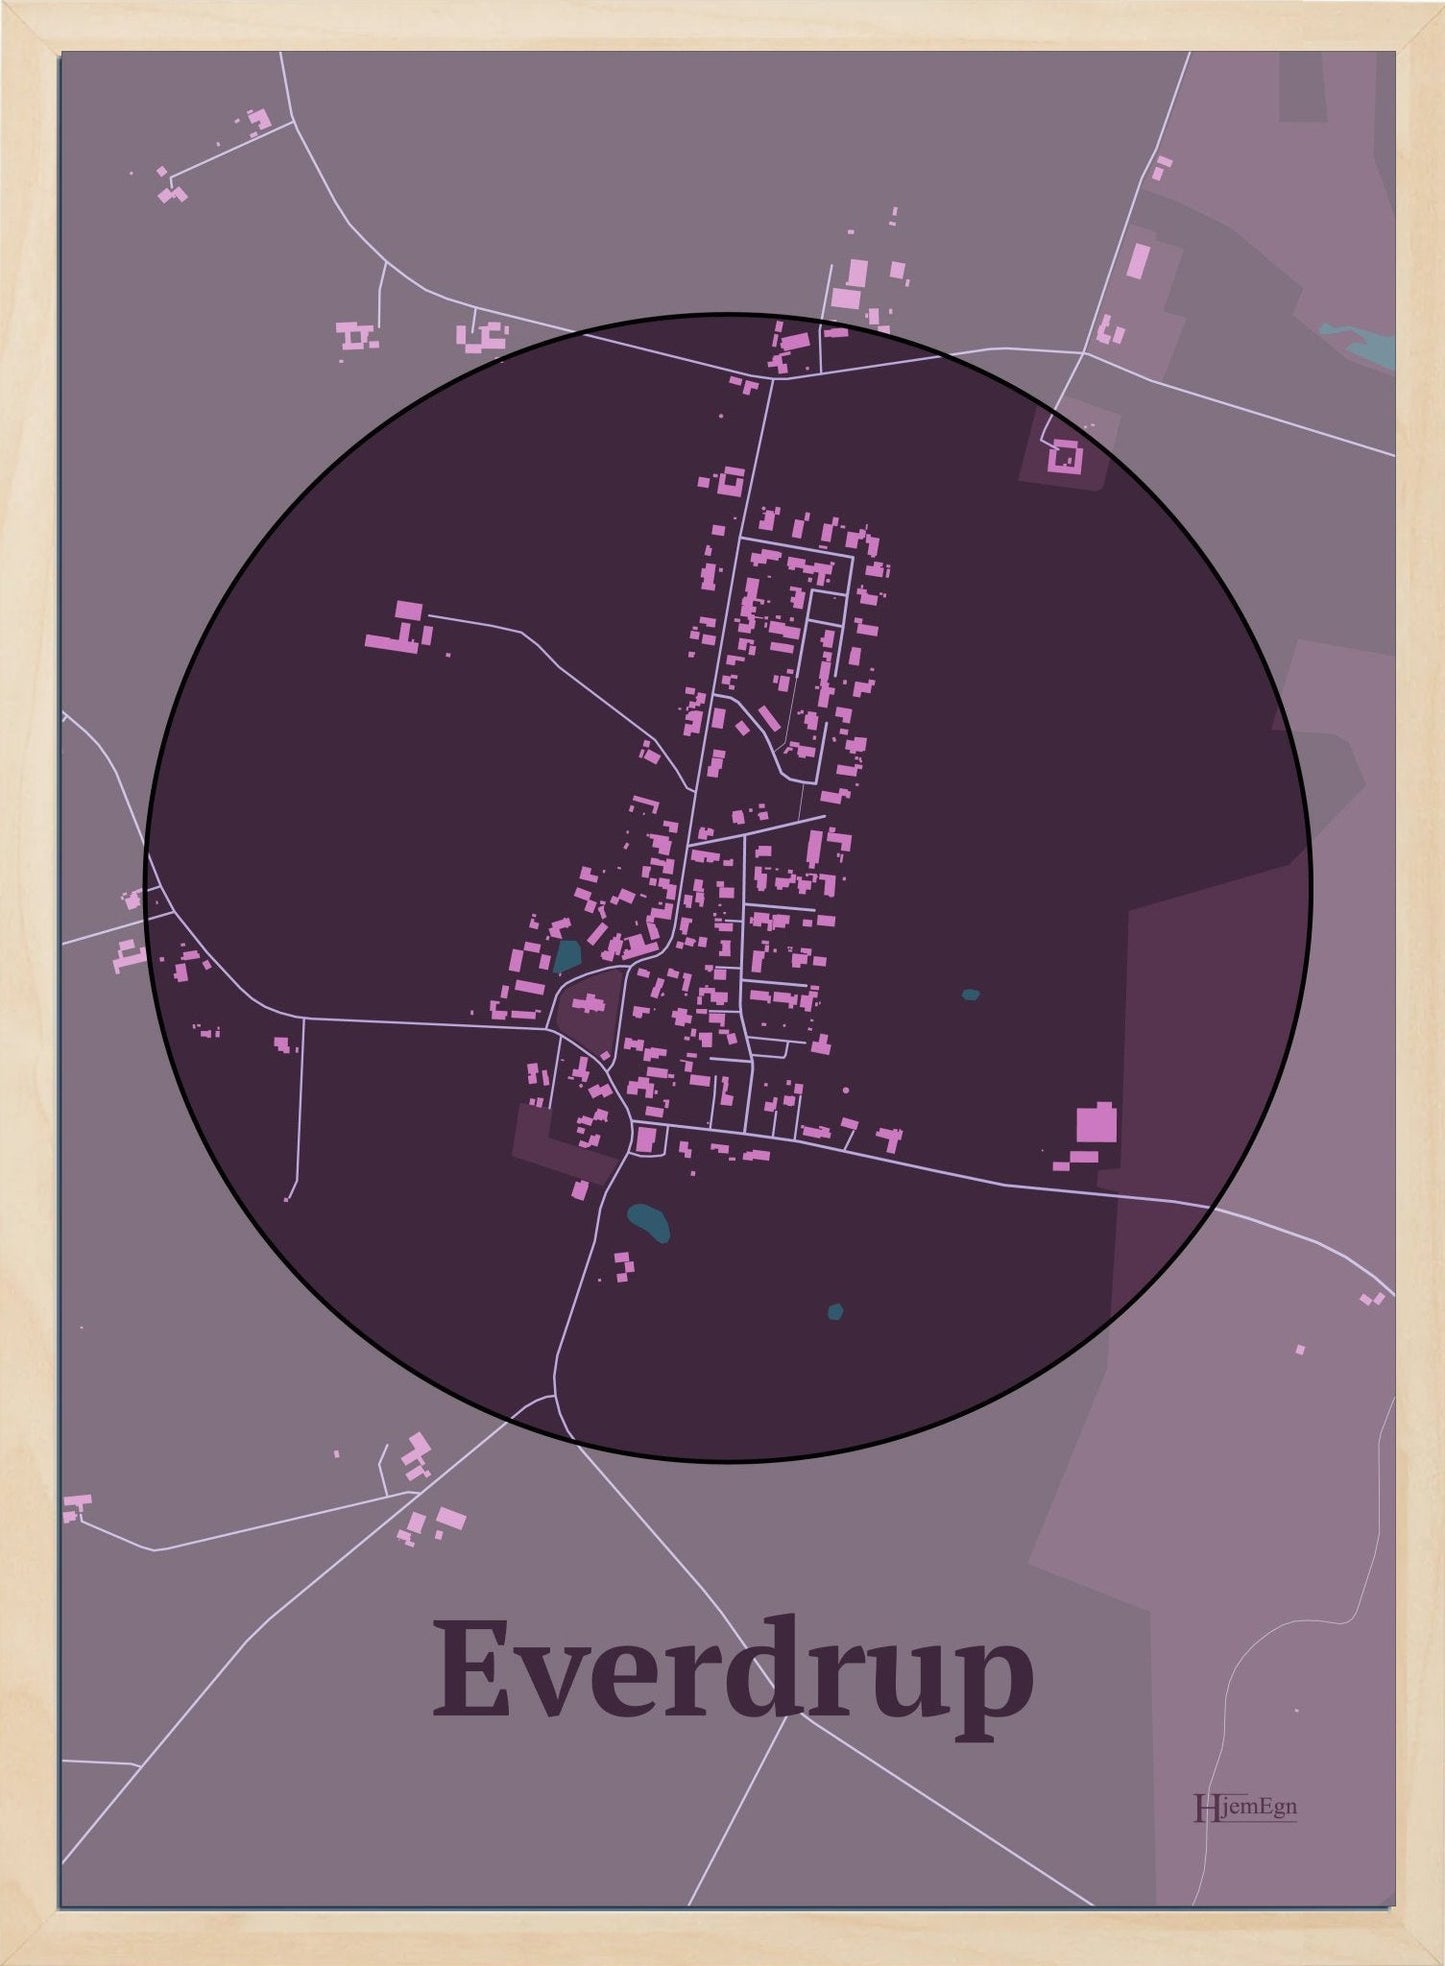 Everdrup plakat i farve mørk rød og HjemEgn.dk design centrum. Design bykort for Everdrup